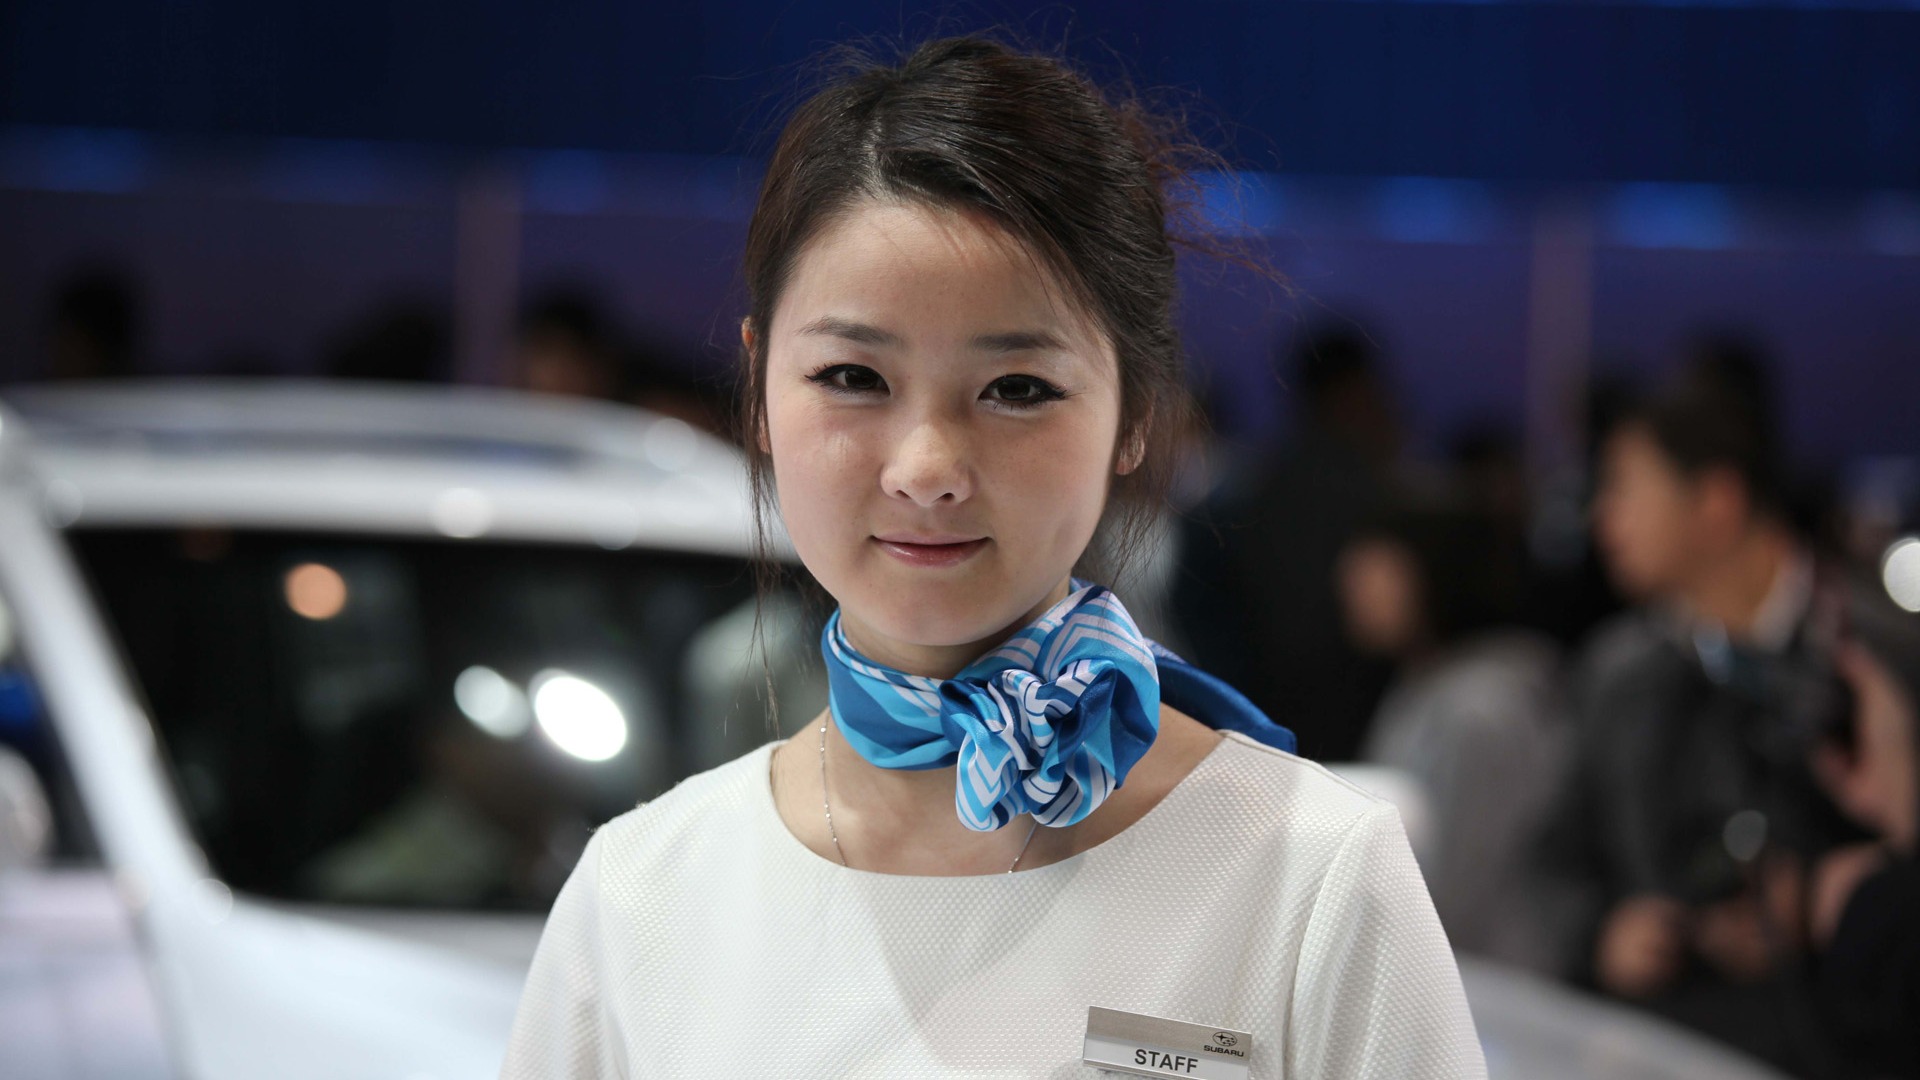 2010 v Pekingu Mezinárodním autosalonu krása (1) (vítr honí mraky práce) #22 - 1920x1080